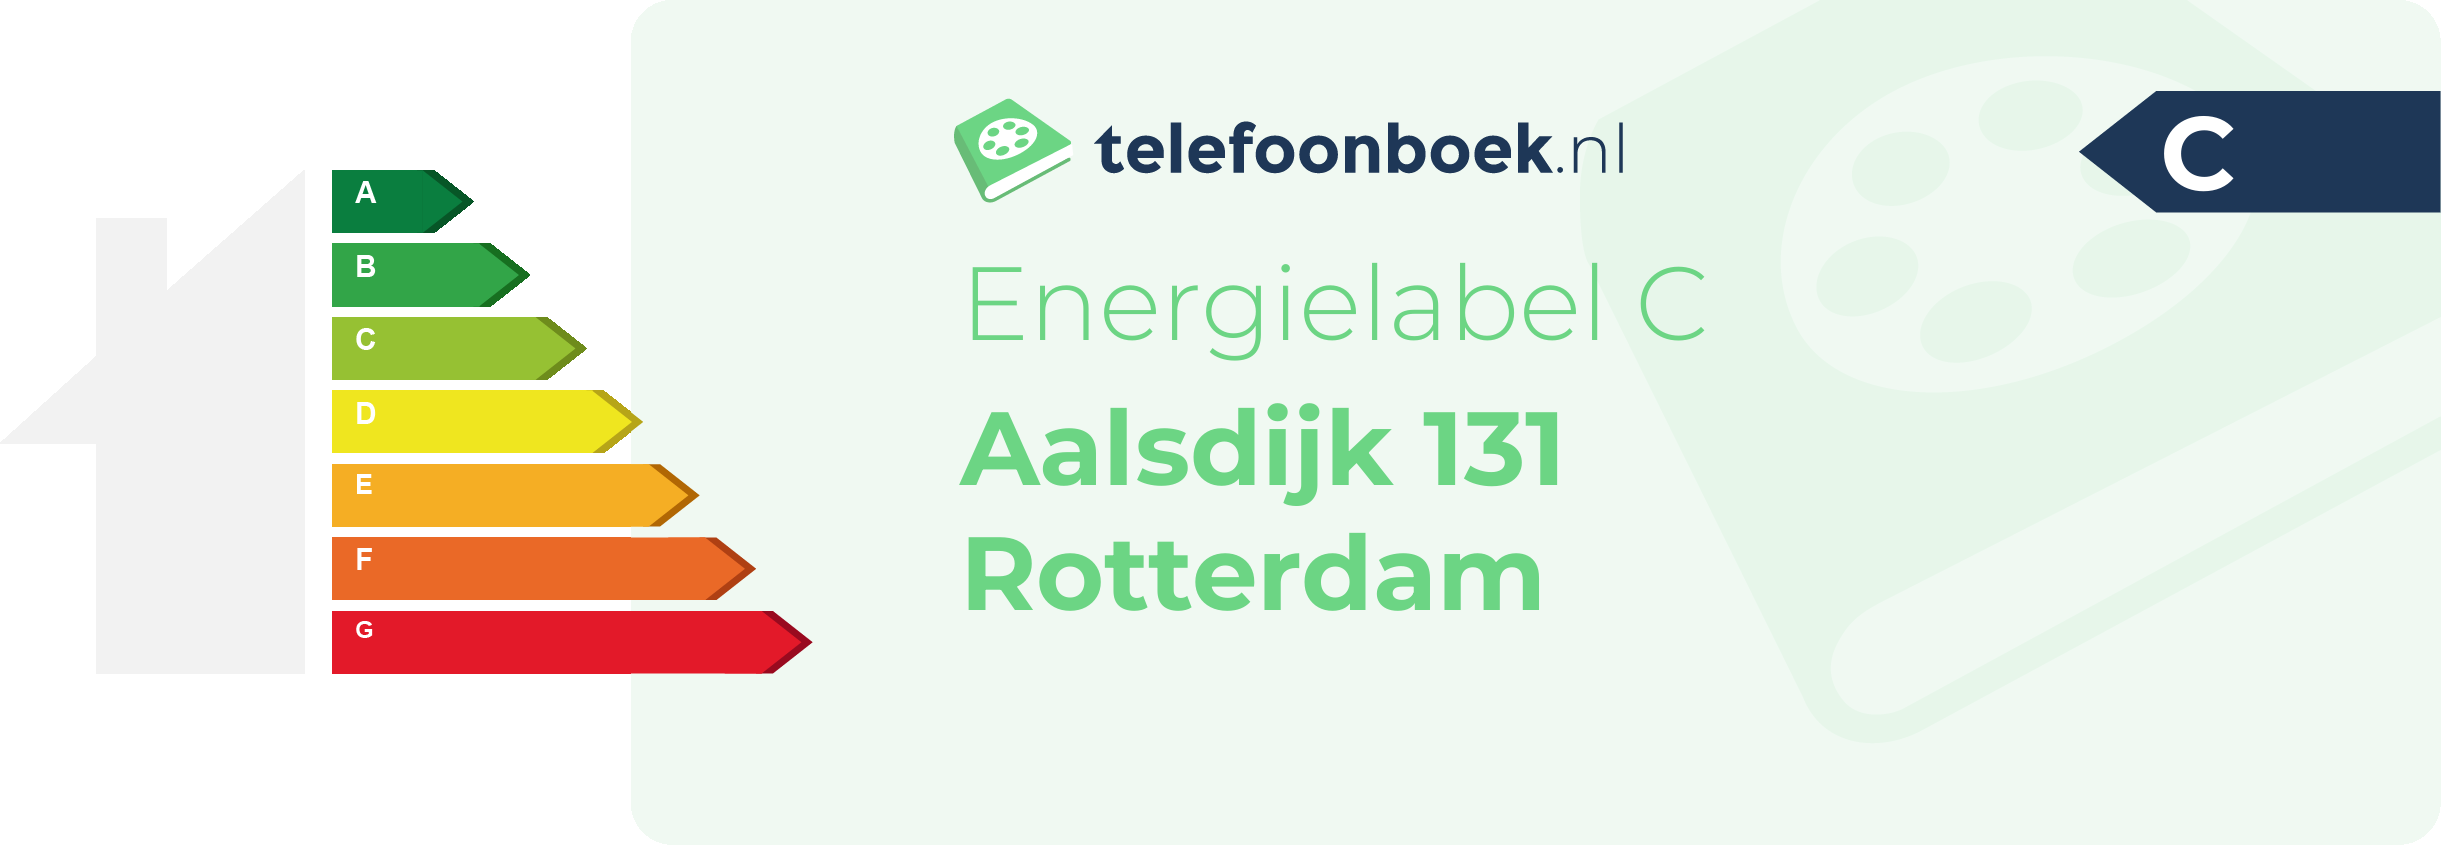 Energielabel Aalsdijk 131 Rotterdam